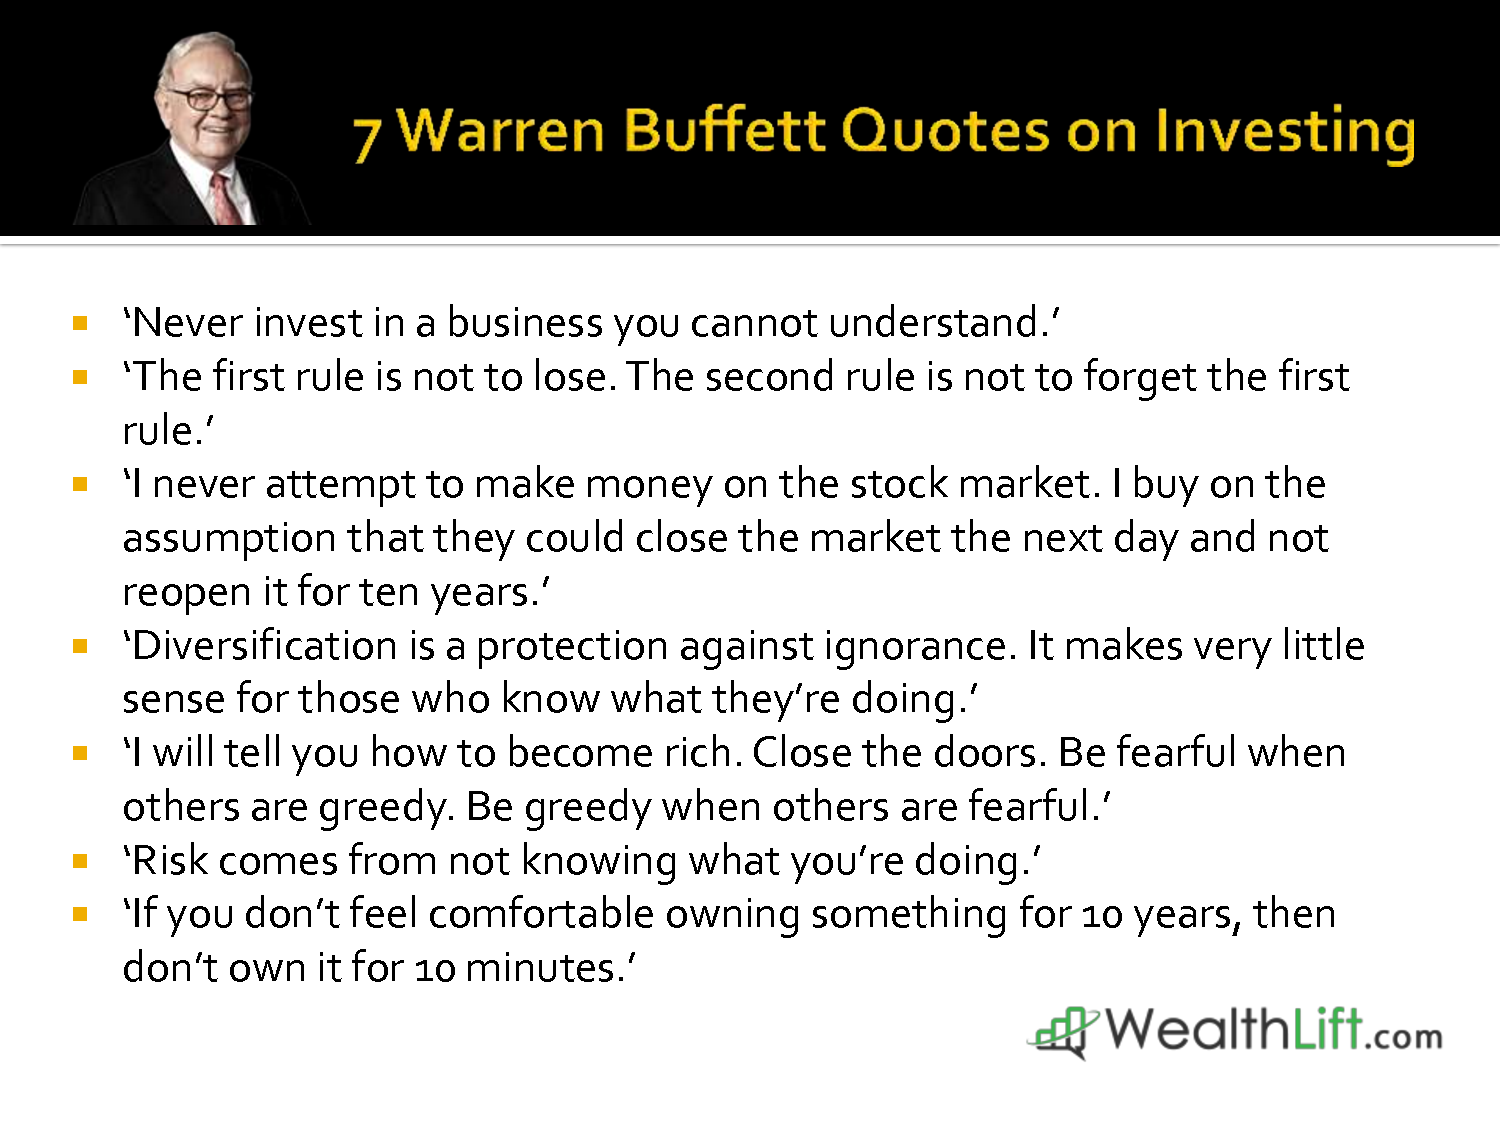 value investing quotes